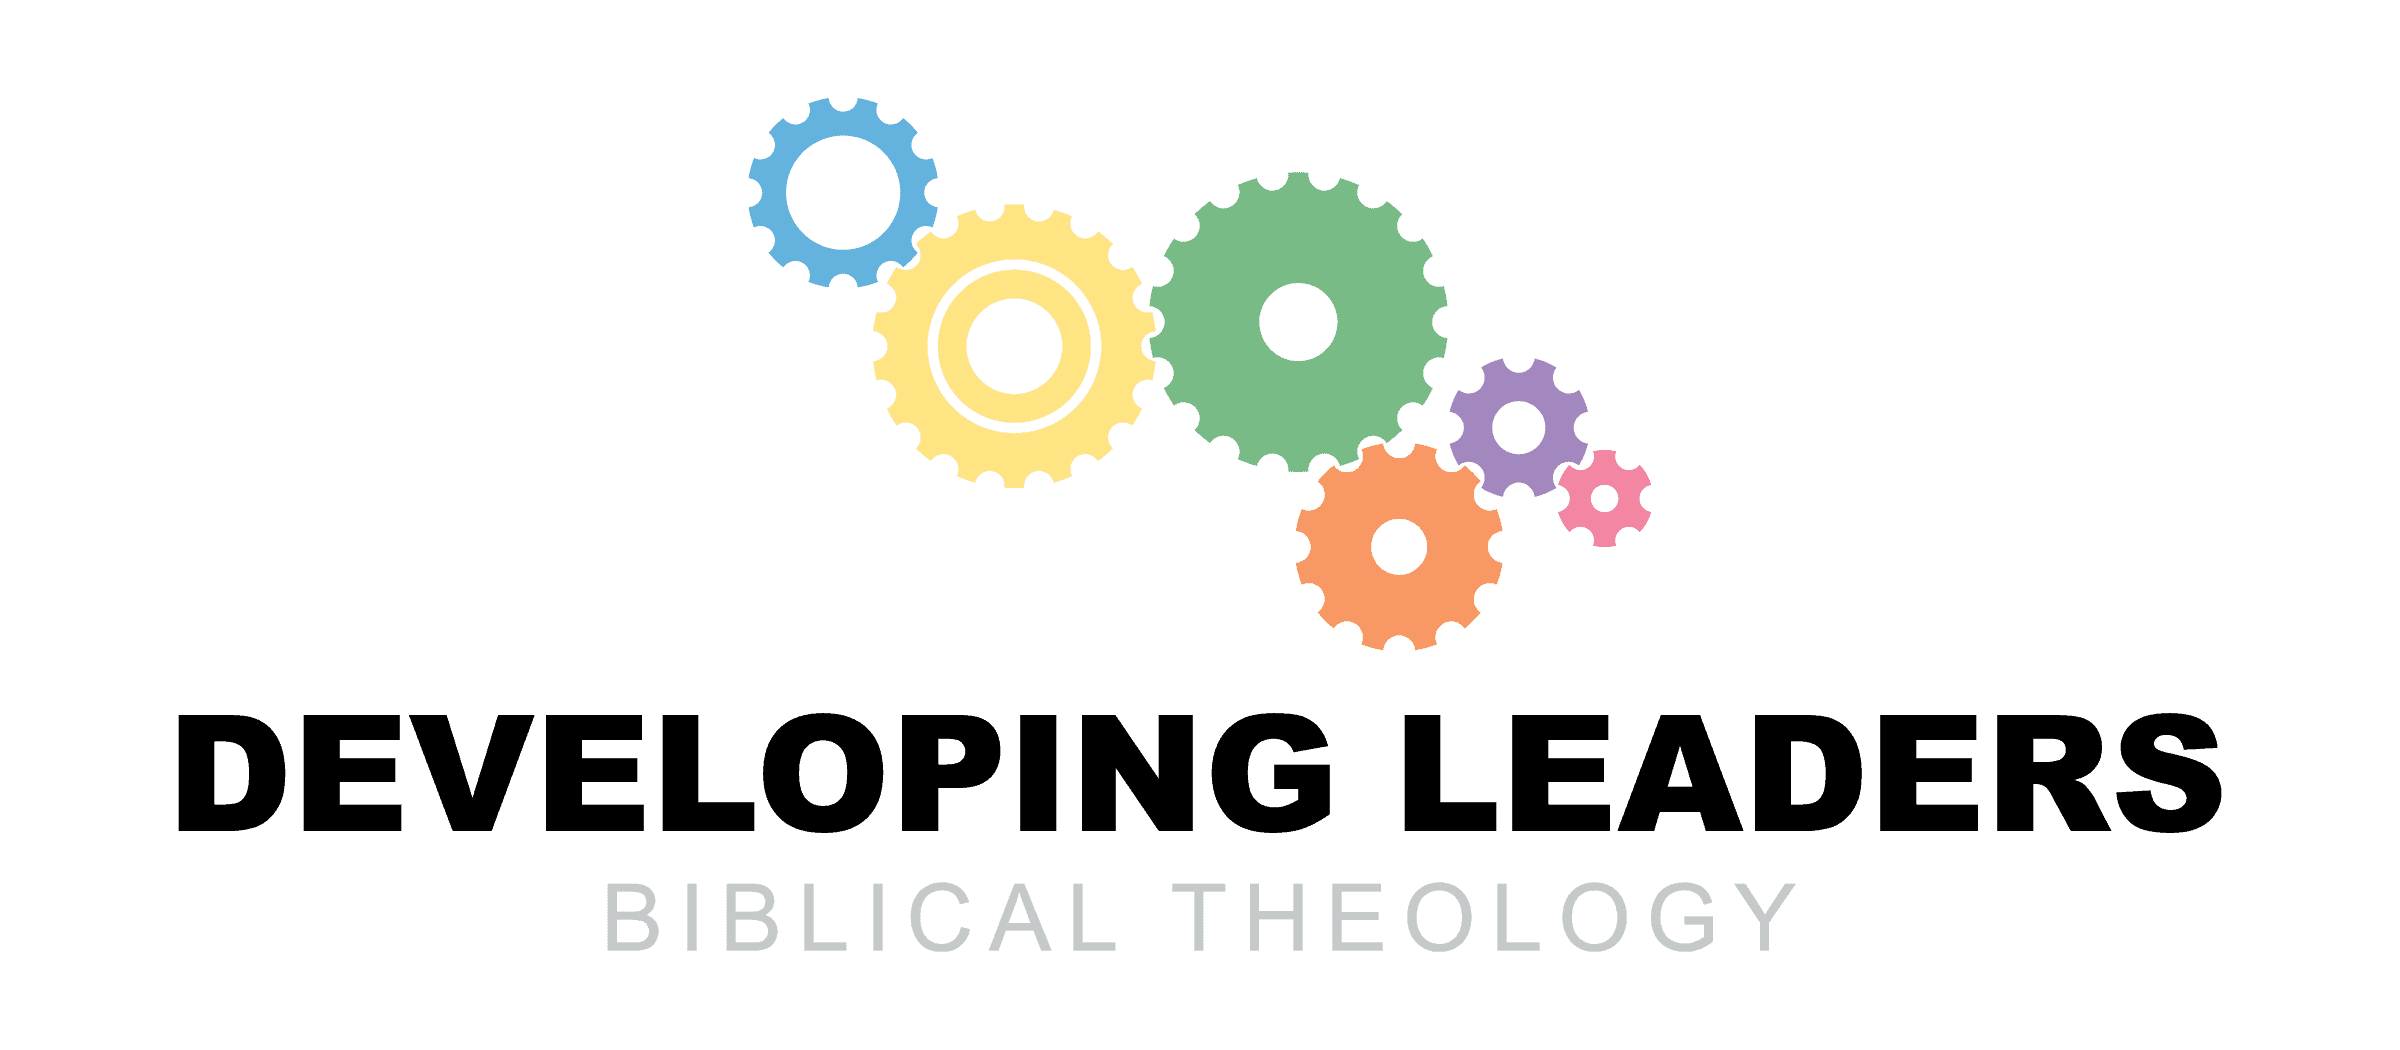 Developing Leaders Biblical Theology - 4C logo